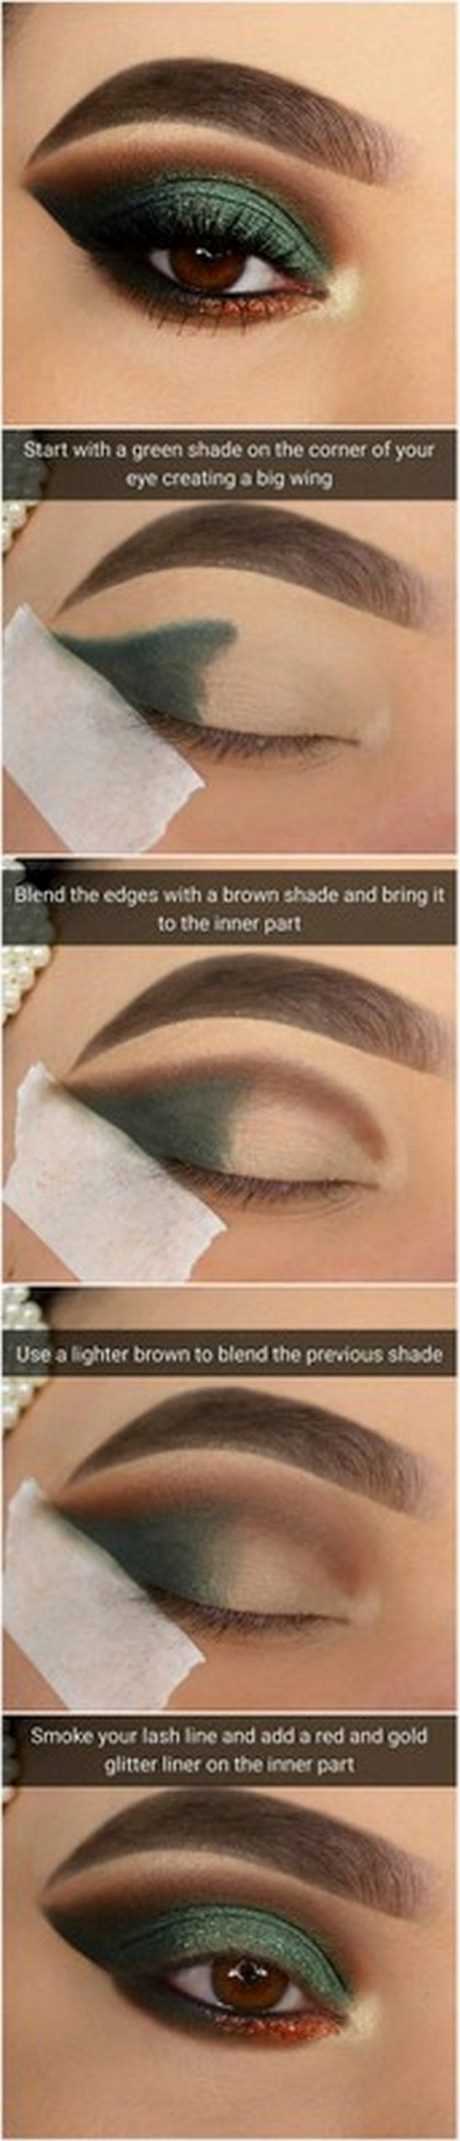 big-smokey-eyes-makeup-tutorial-26_12 Grote smokey eyes make-up tutorial